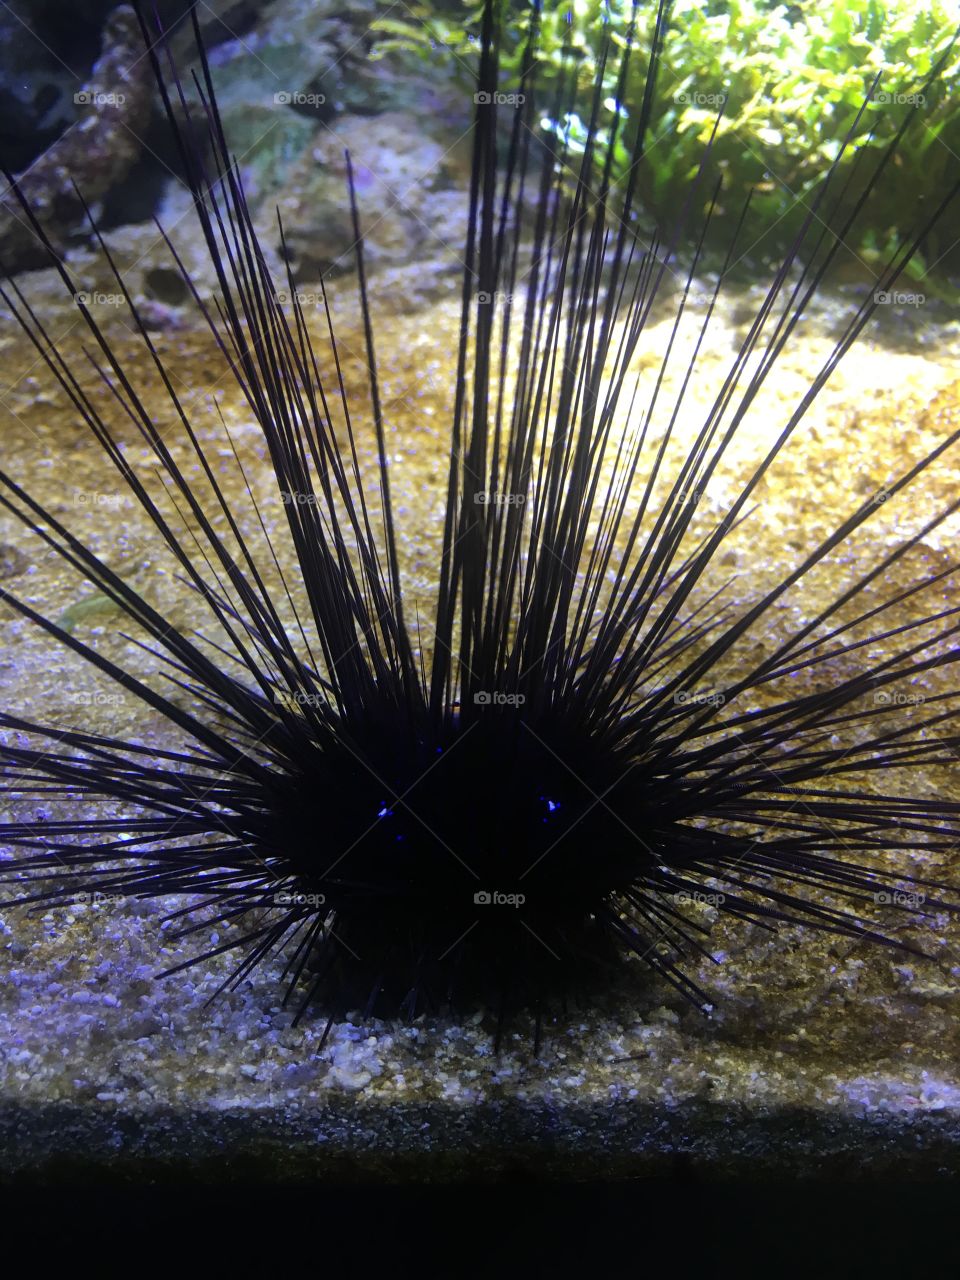 Sea Urchin with glowing eyes. Or is it an alien?